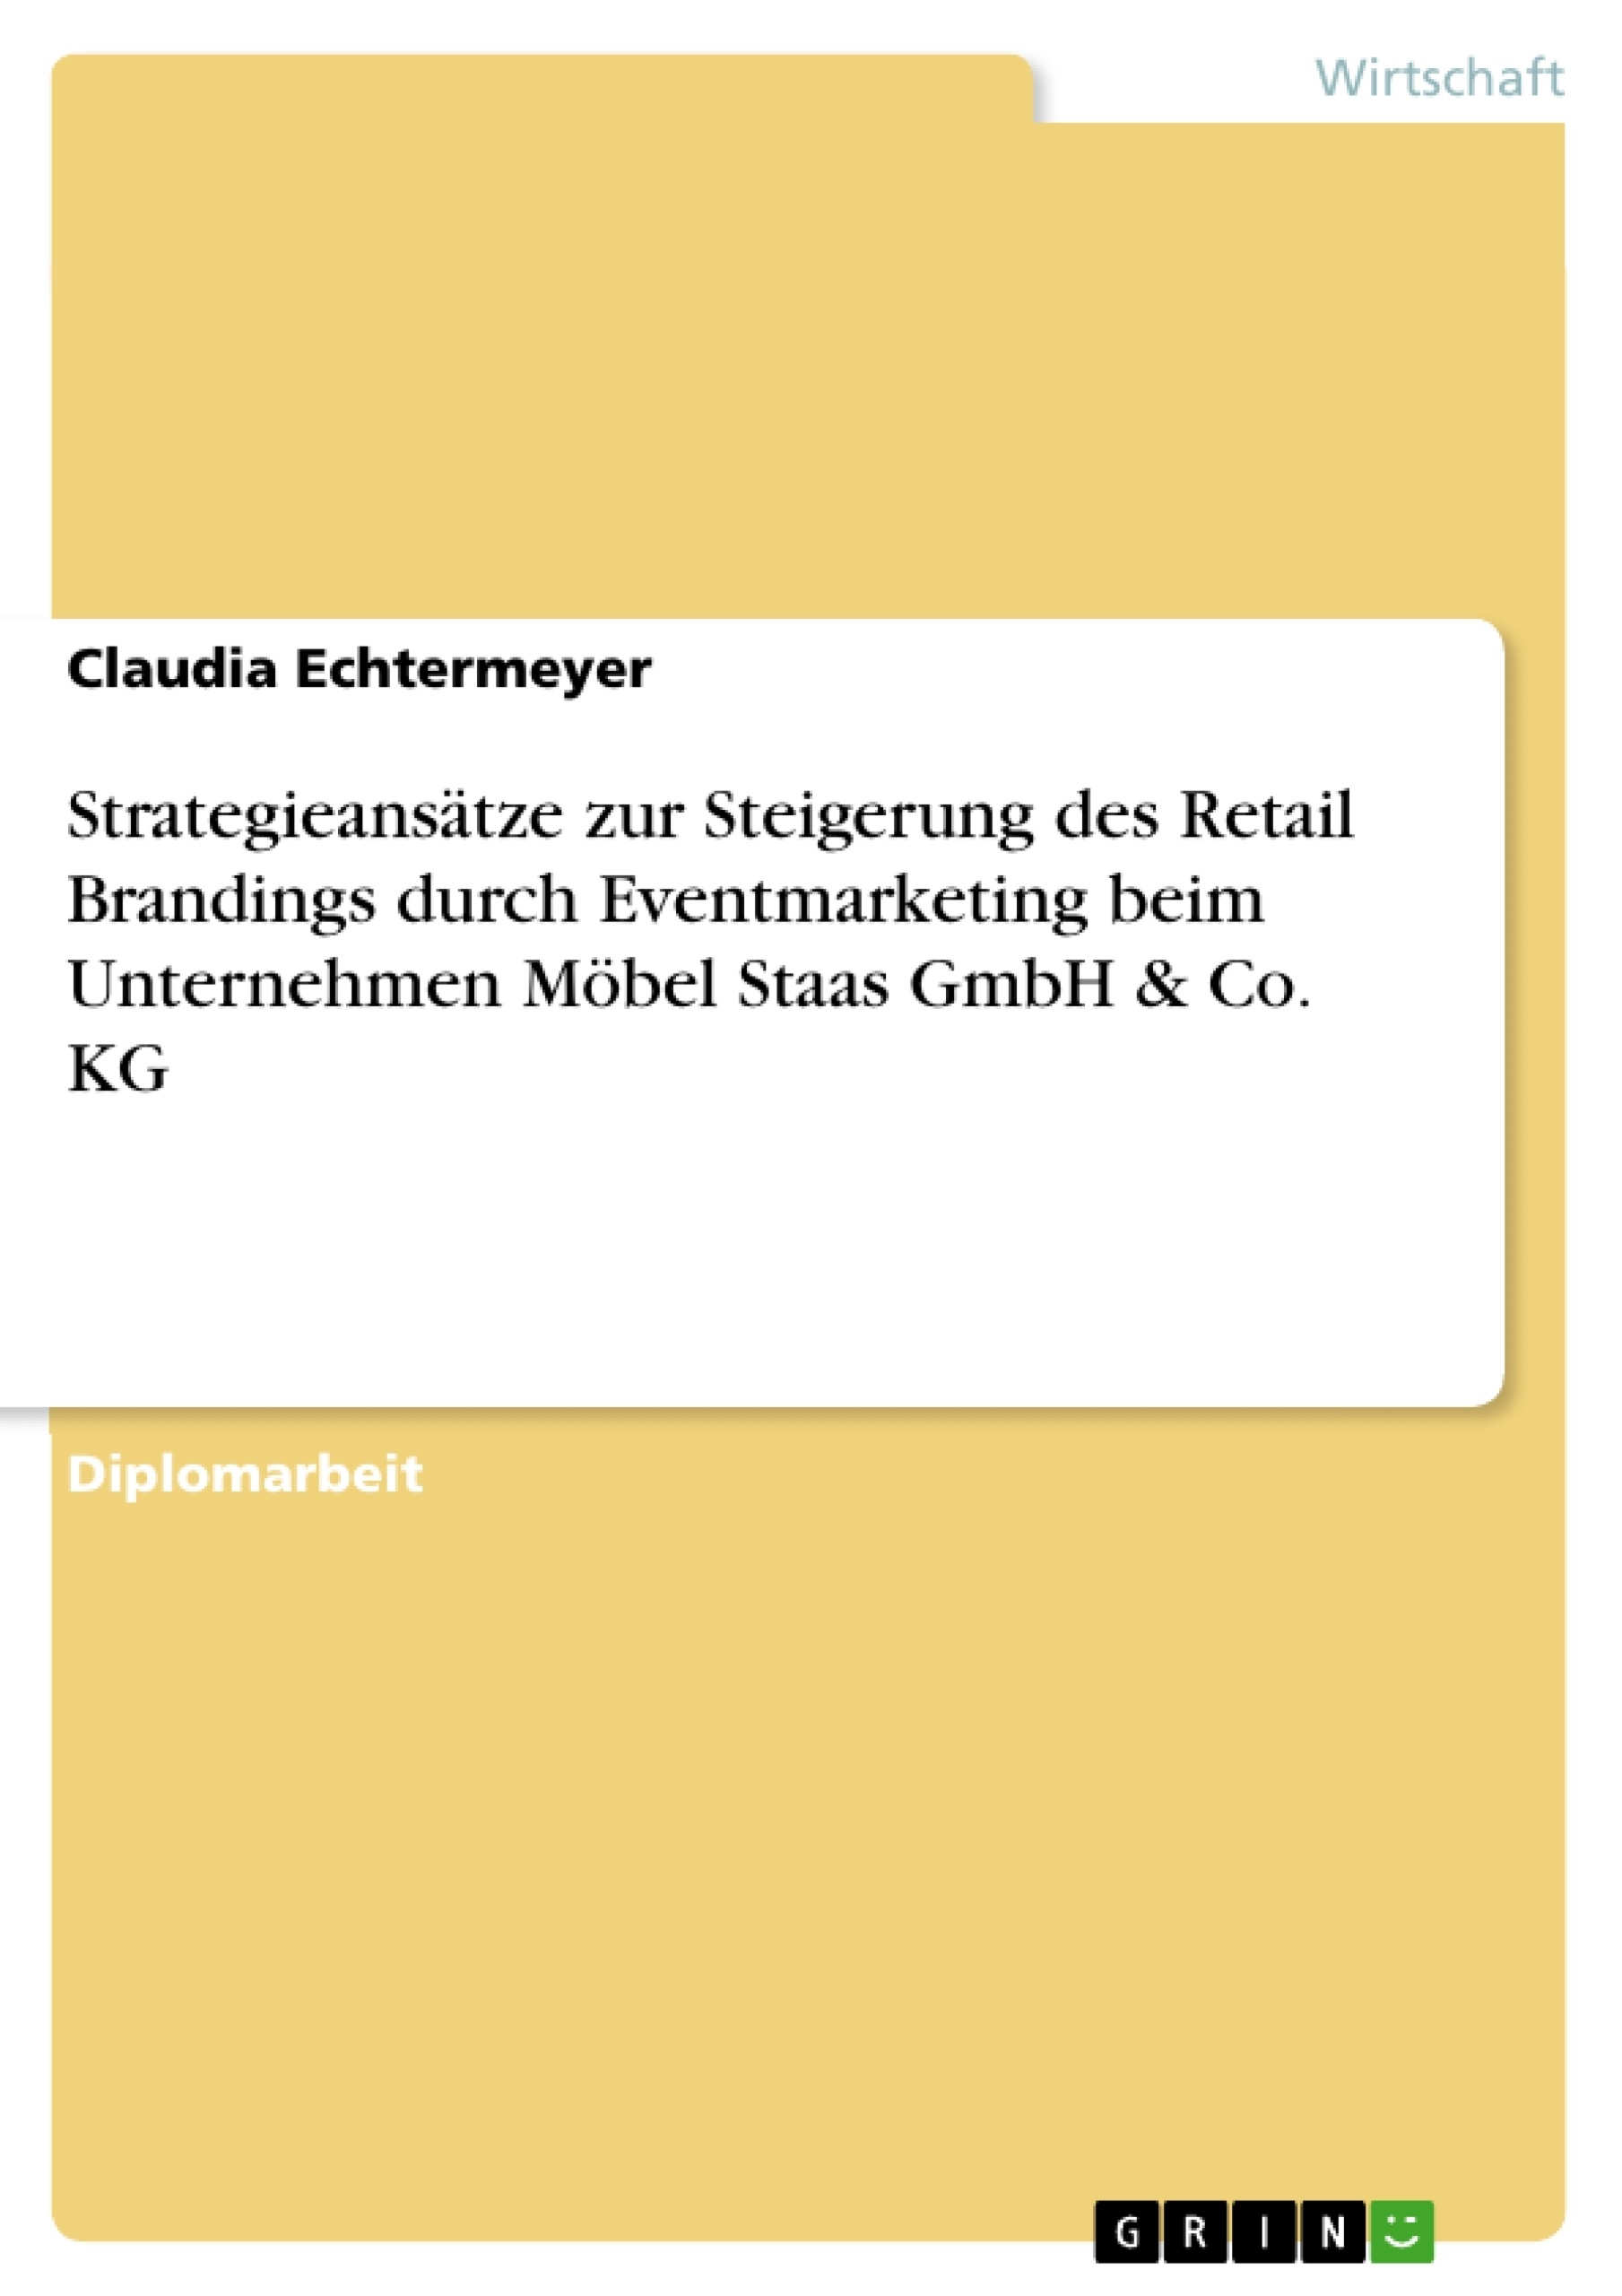 Titel: Strategieansätze zur Steigerung des Retail Brandings durch Eventmarketing beim Unternehmen Möbel Staas GmbH & Co. KG